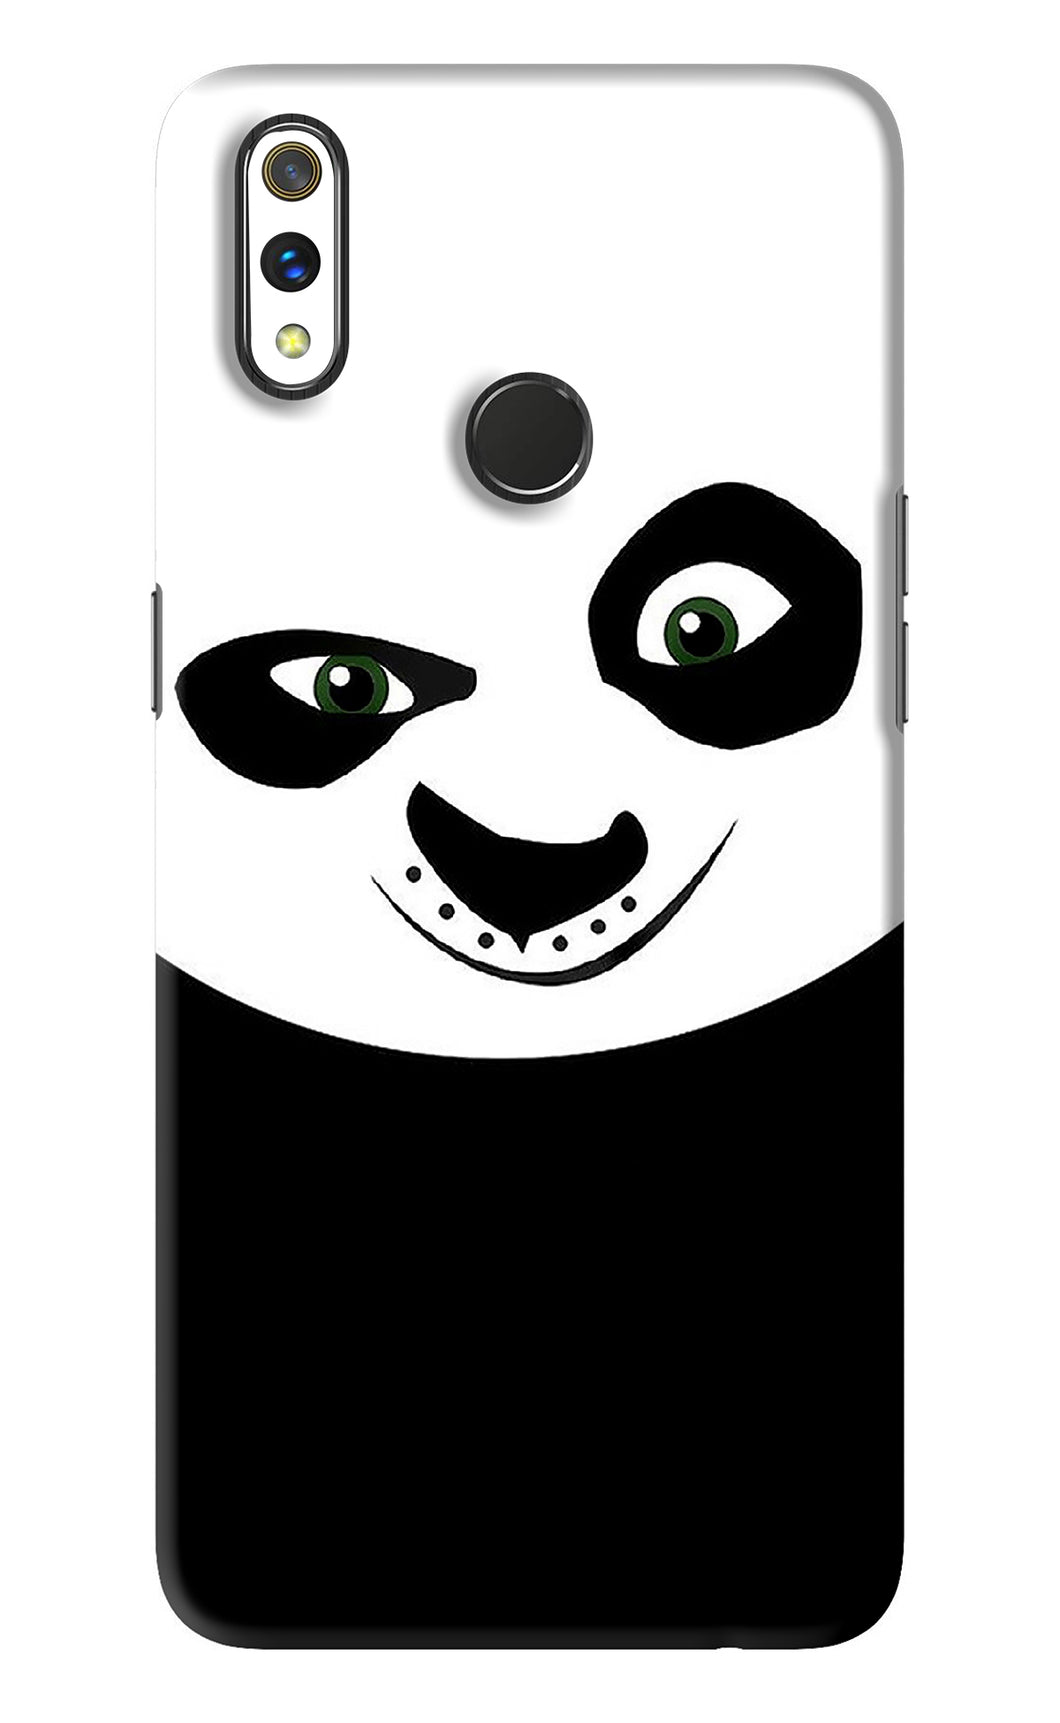 Panda Realme 3 Pro Back Skin Wrap